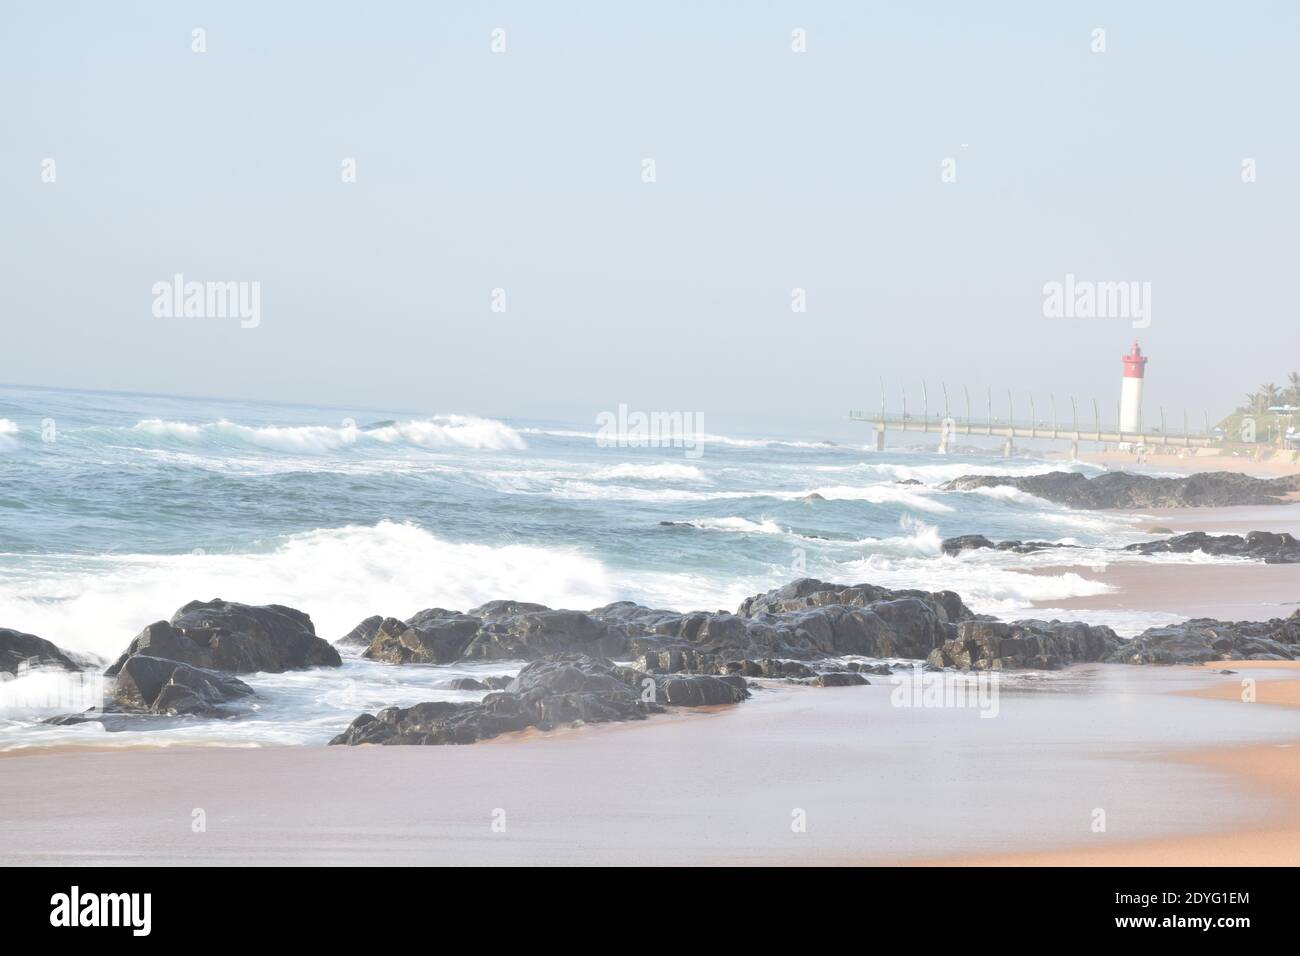 La mattina presto sulla spiaggia, le onde si schiantano contro le rocce con il molo e il faro sullo sfondo Foto Stock